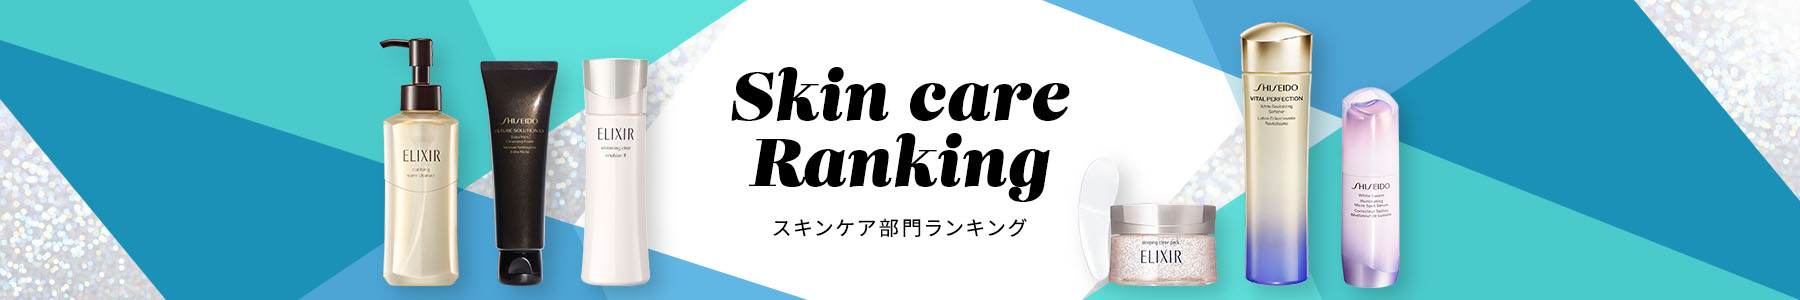 Skin care Ranking スキンケア部門ランキング